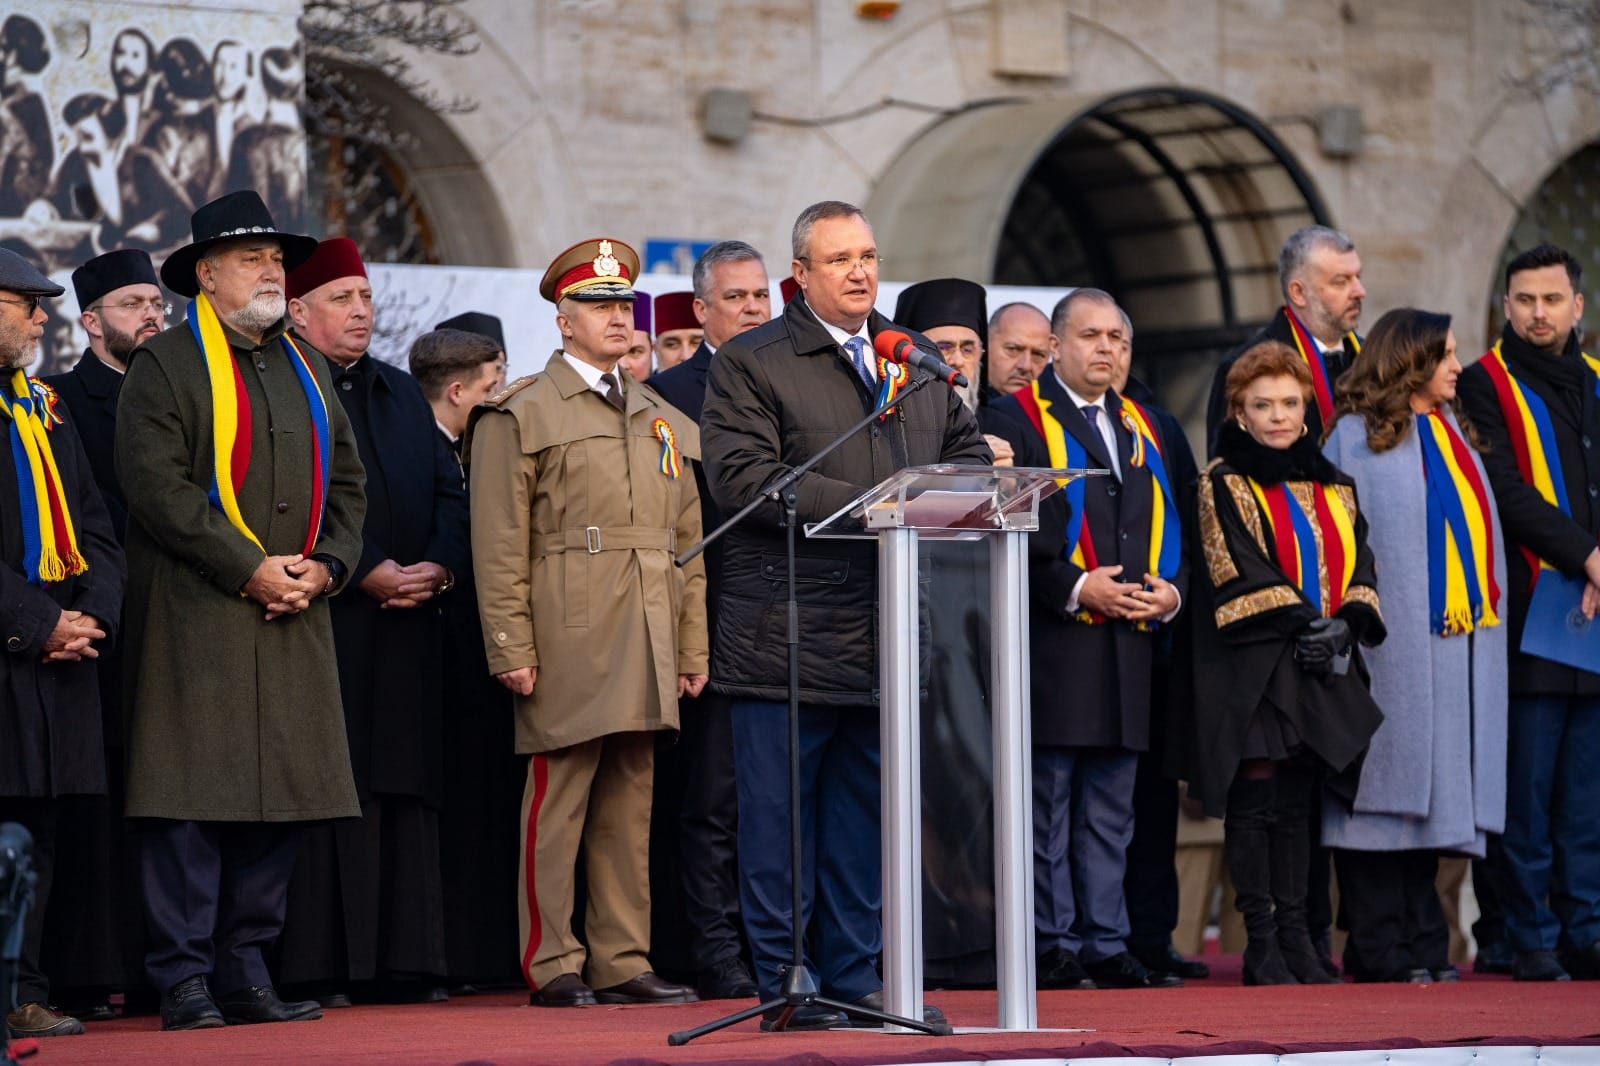 Discursul Preşedintelui Senatului Nicolae Ciucă la ceremonia organizată cu prilejul împlinii a 165 de ani de la Unirea Principatelor Române